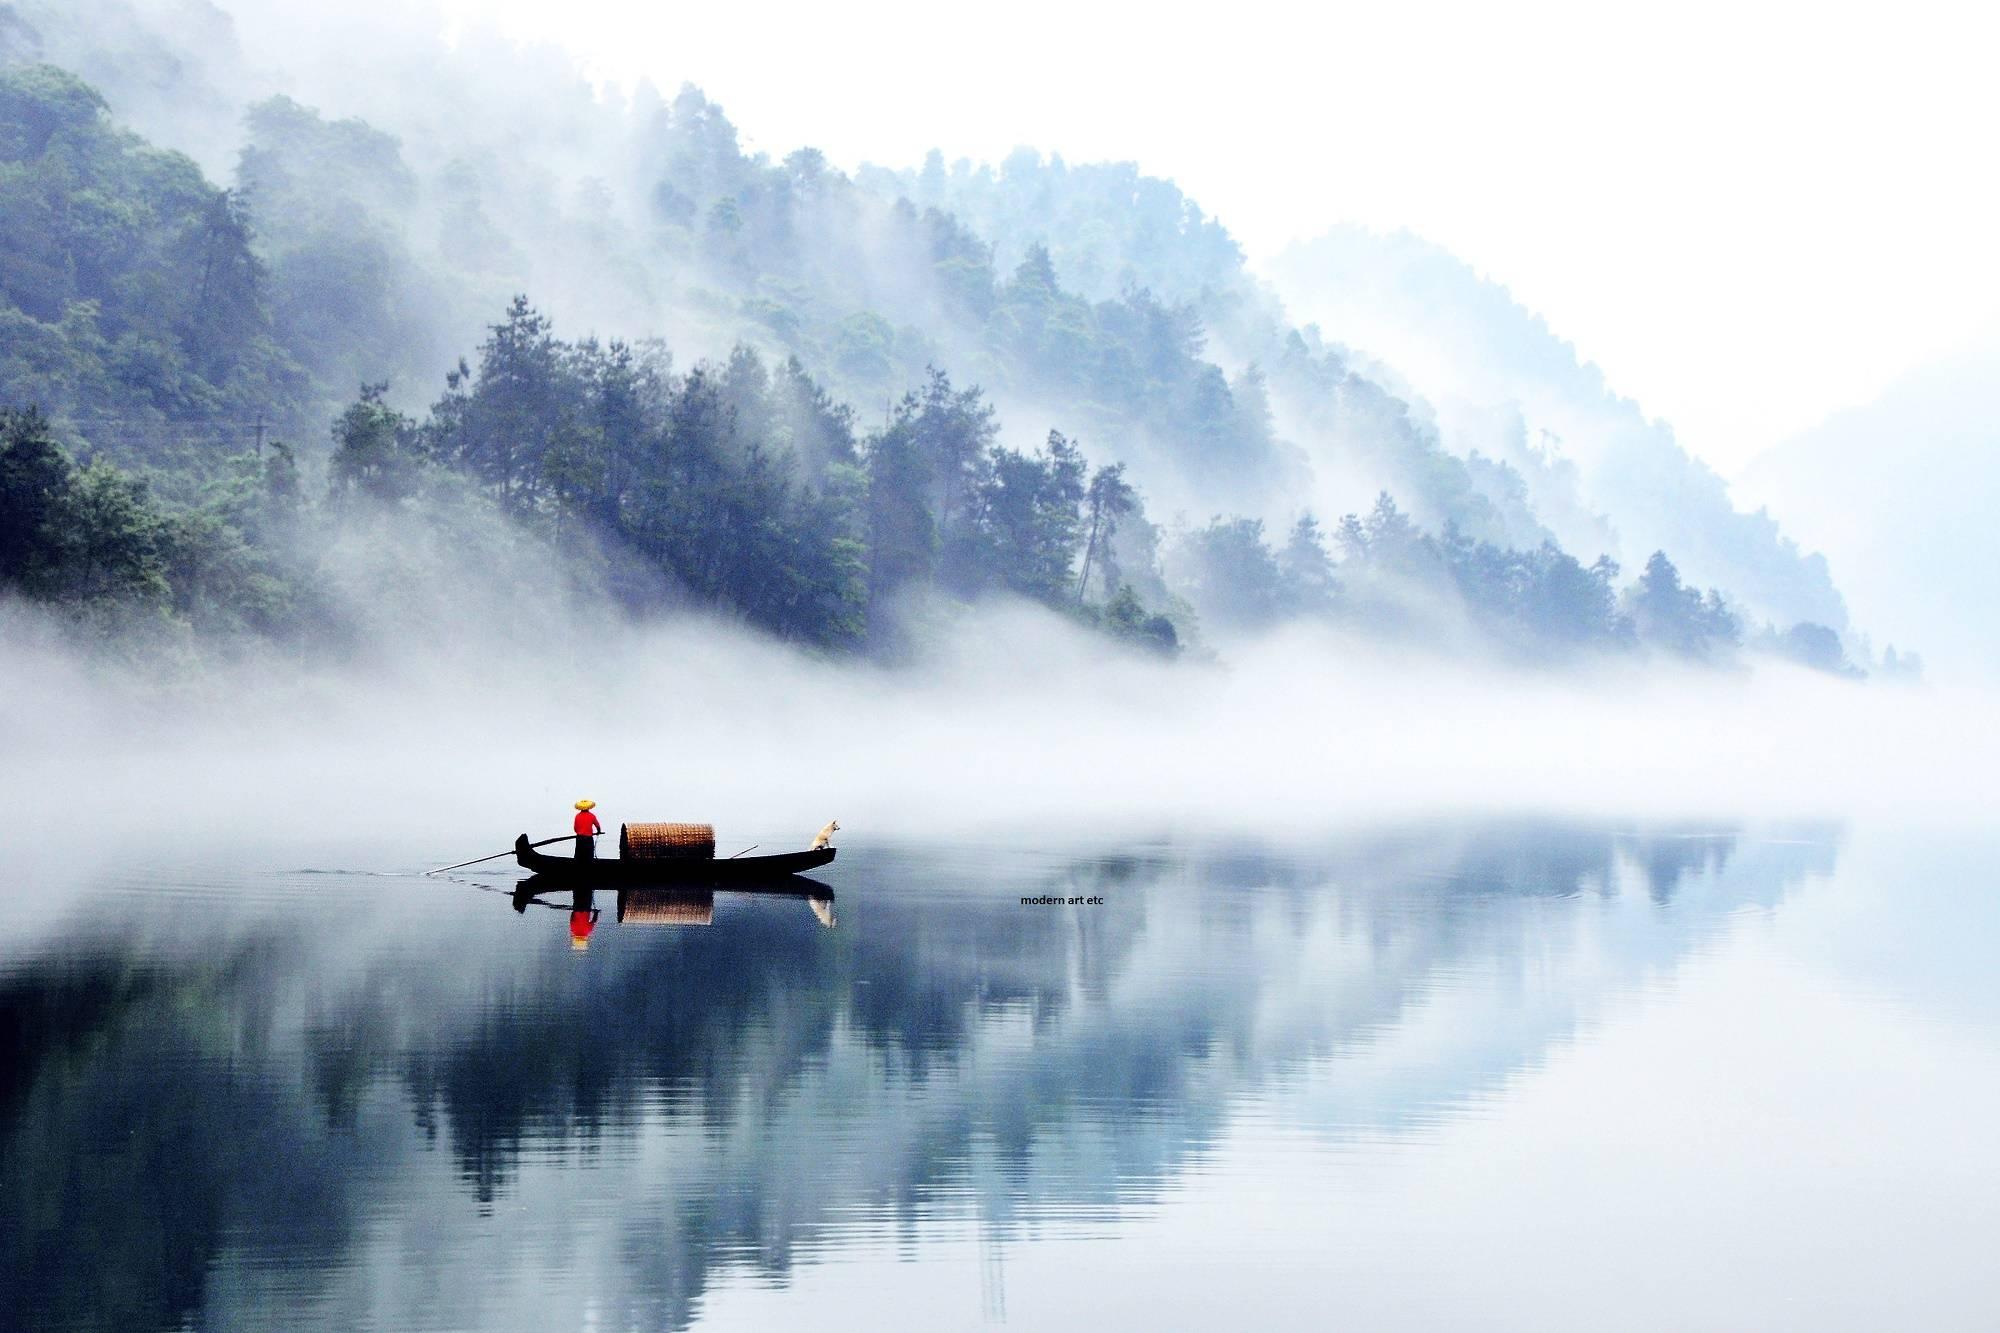 Peter Leung Color Photograph - Far East, China landcape series - "Tranquility" Dong Jiang Lake, China